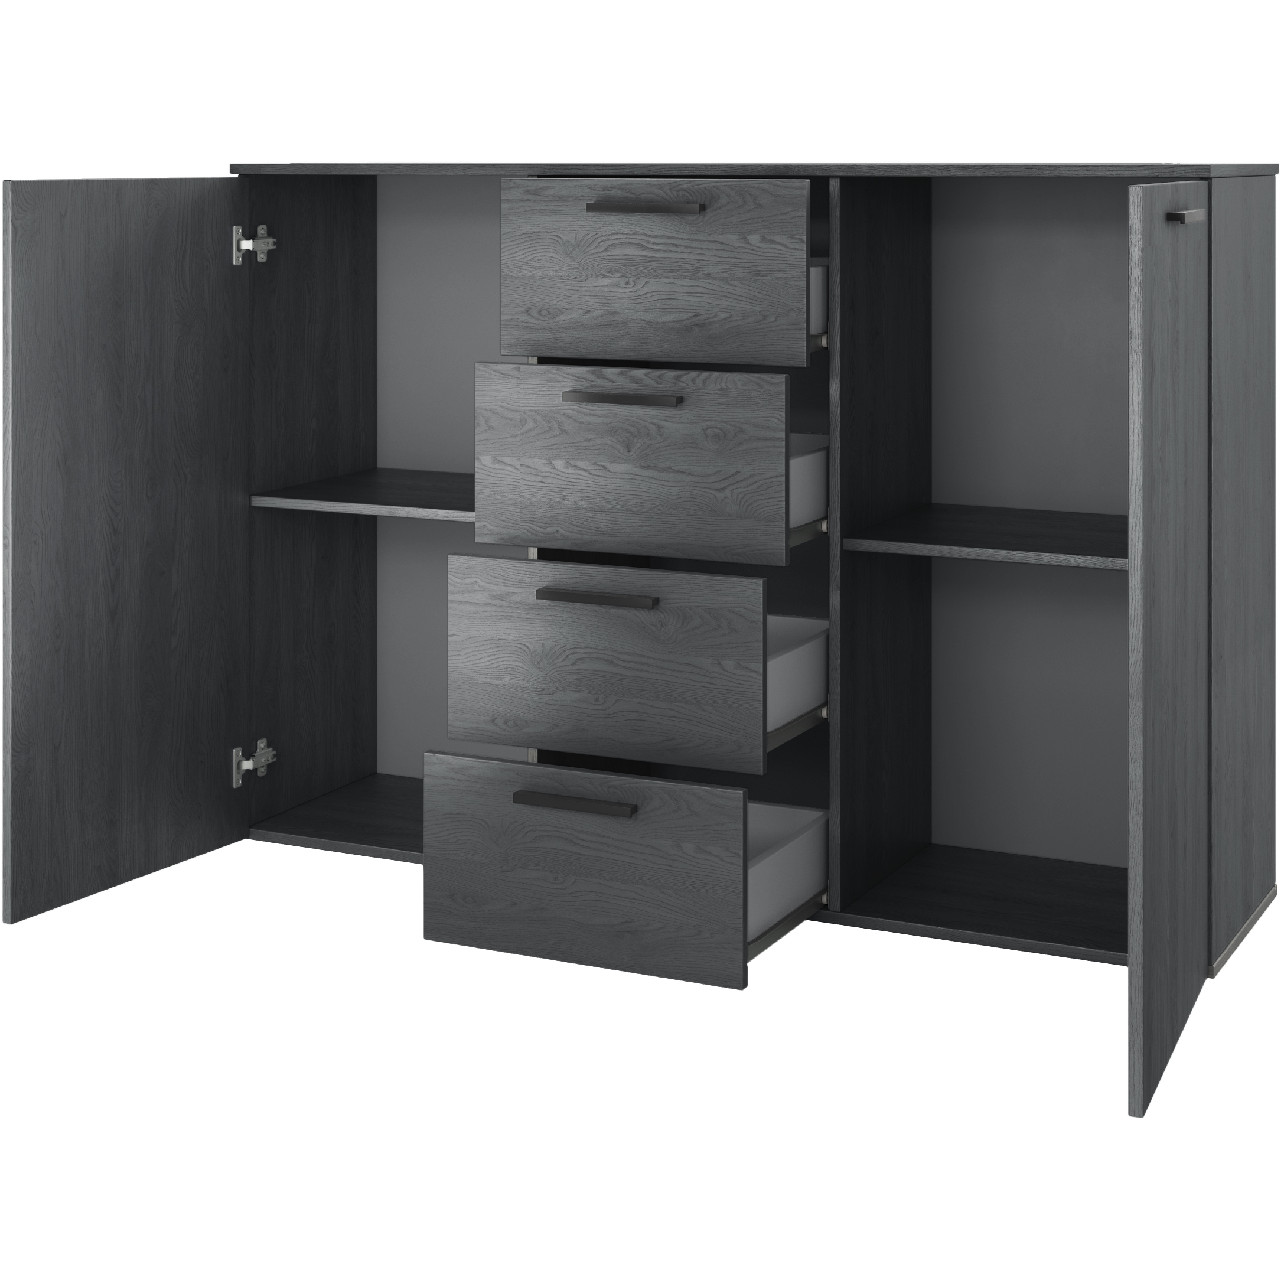 Storage cabinet GALAXY GX26 carbon oak